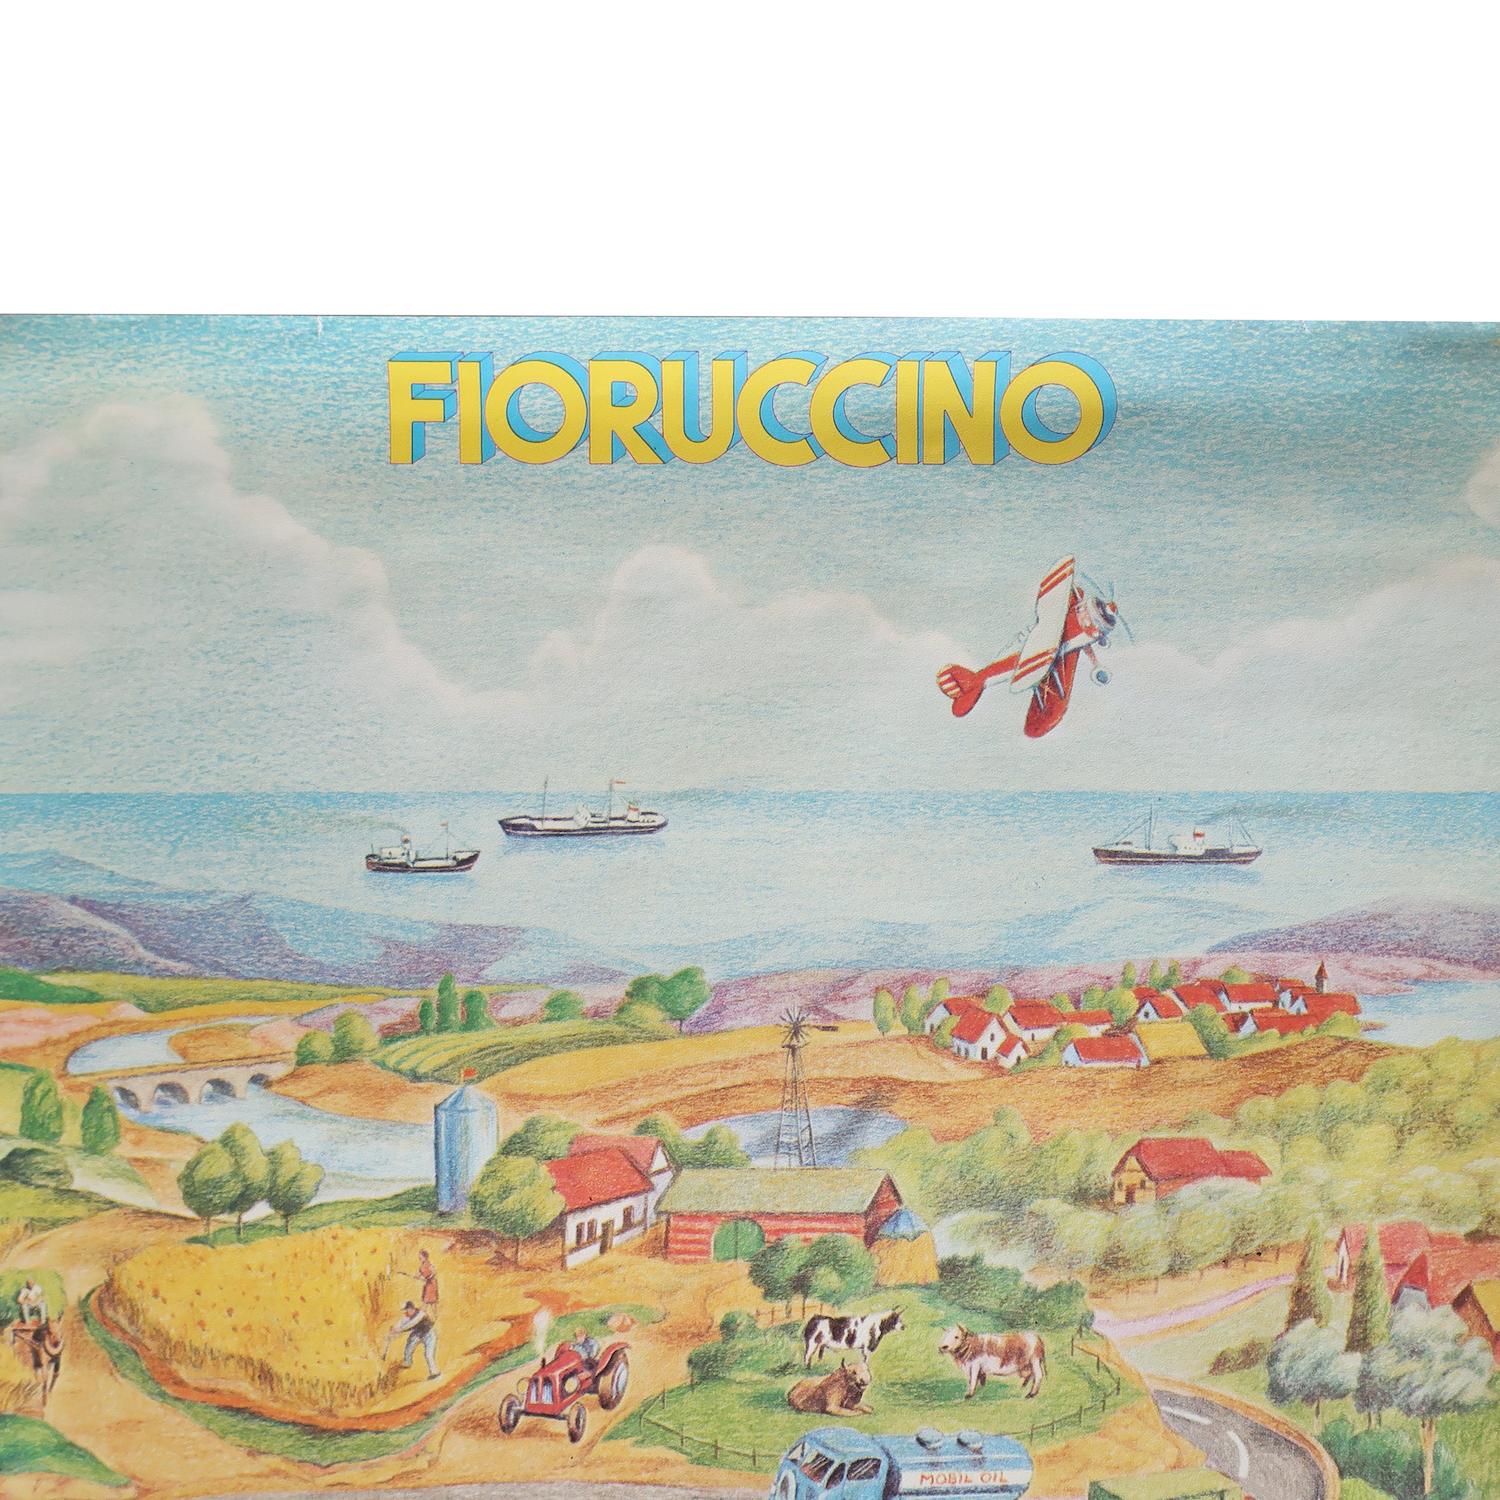 20th Century Vintage Fiorucci “Fioruccino” Illustrated Poster 1979 For Sale